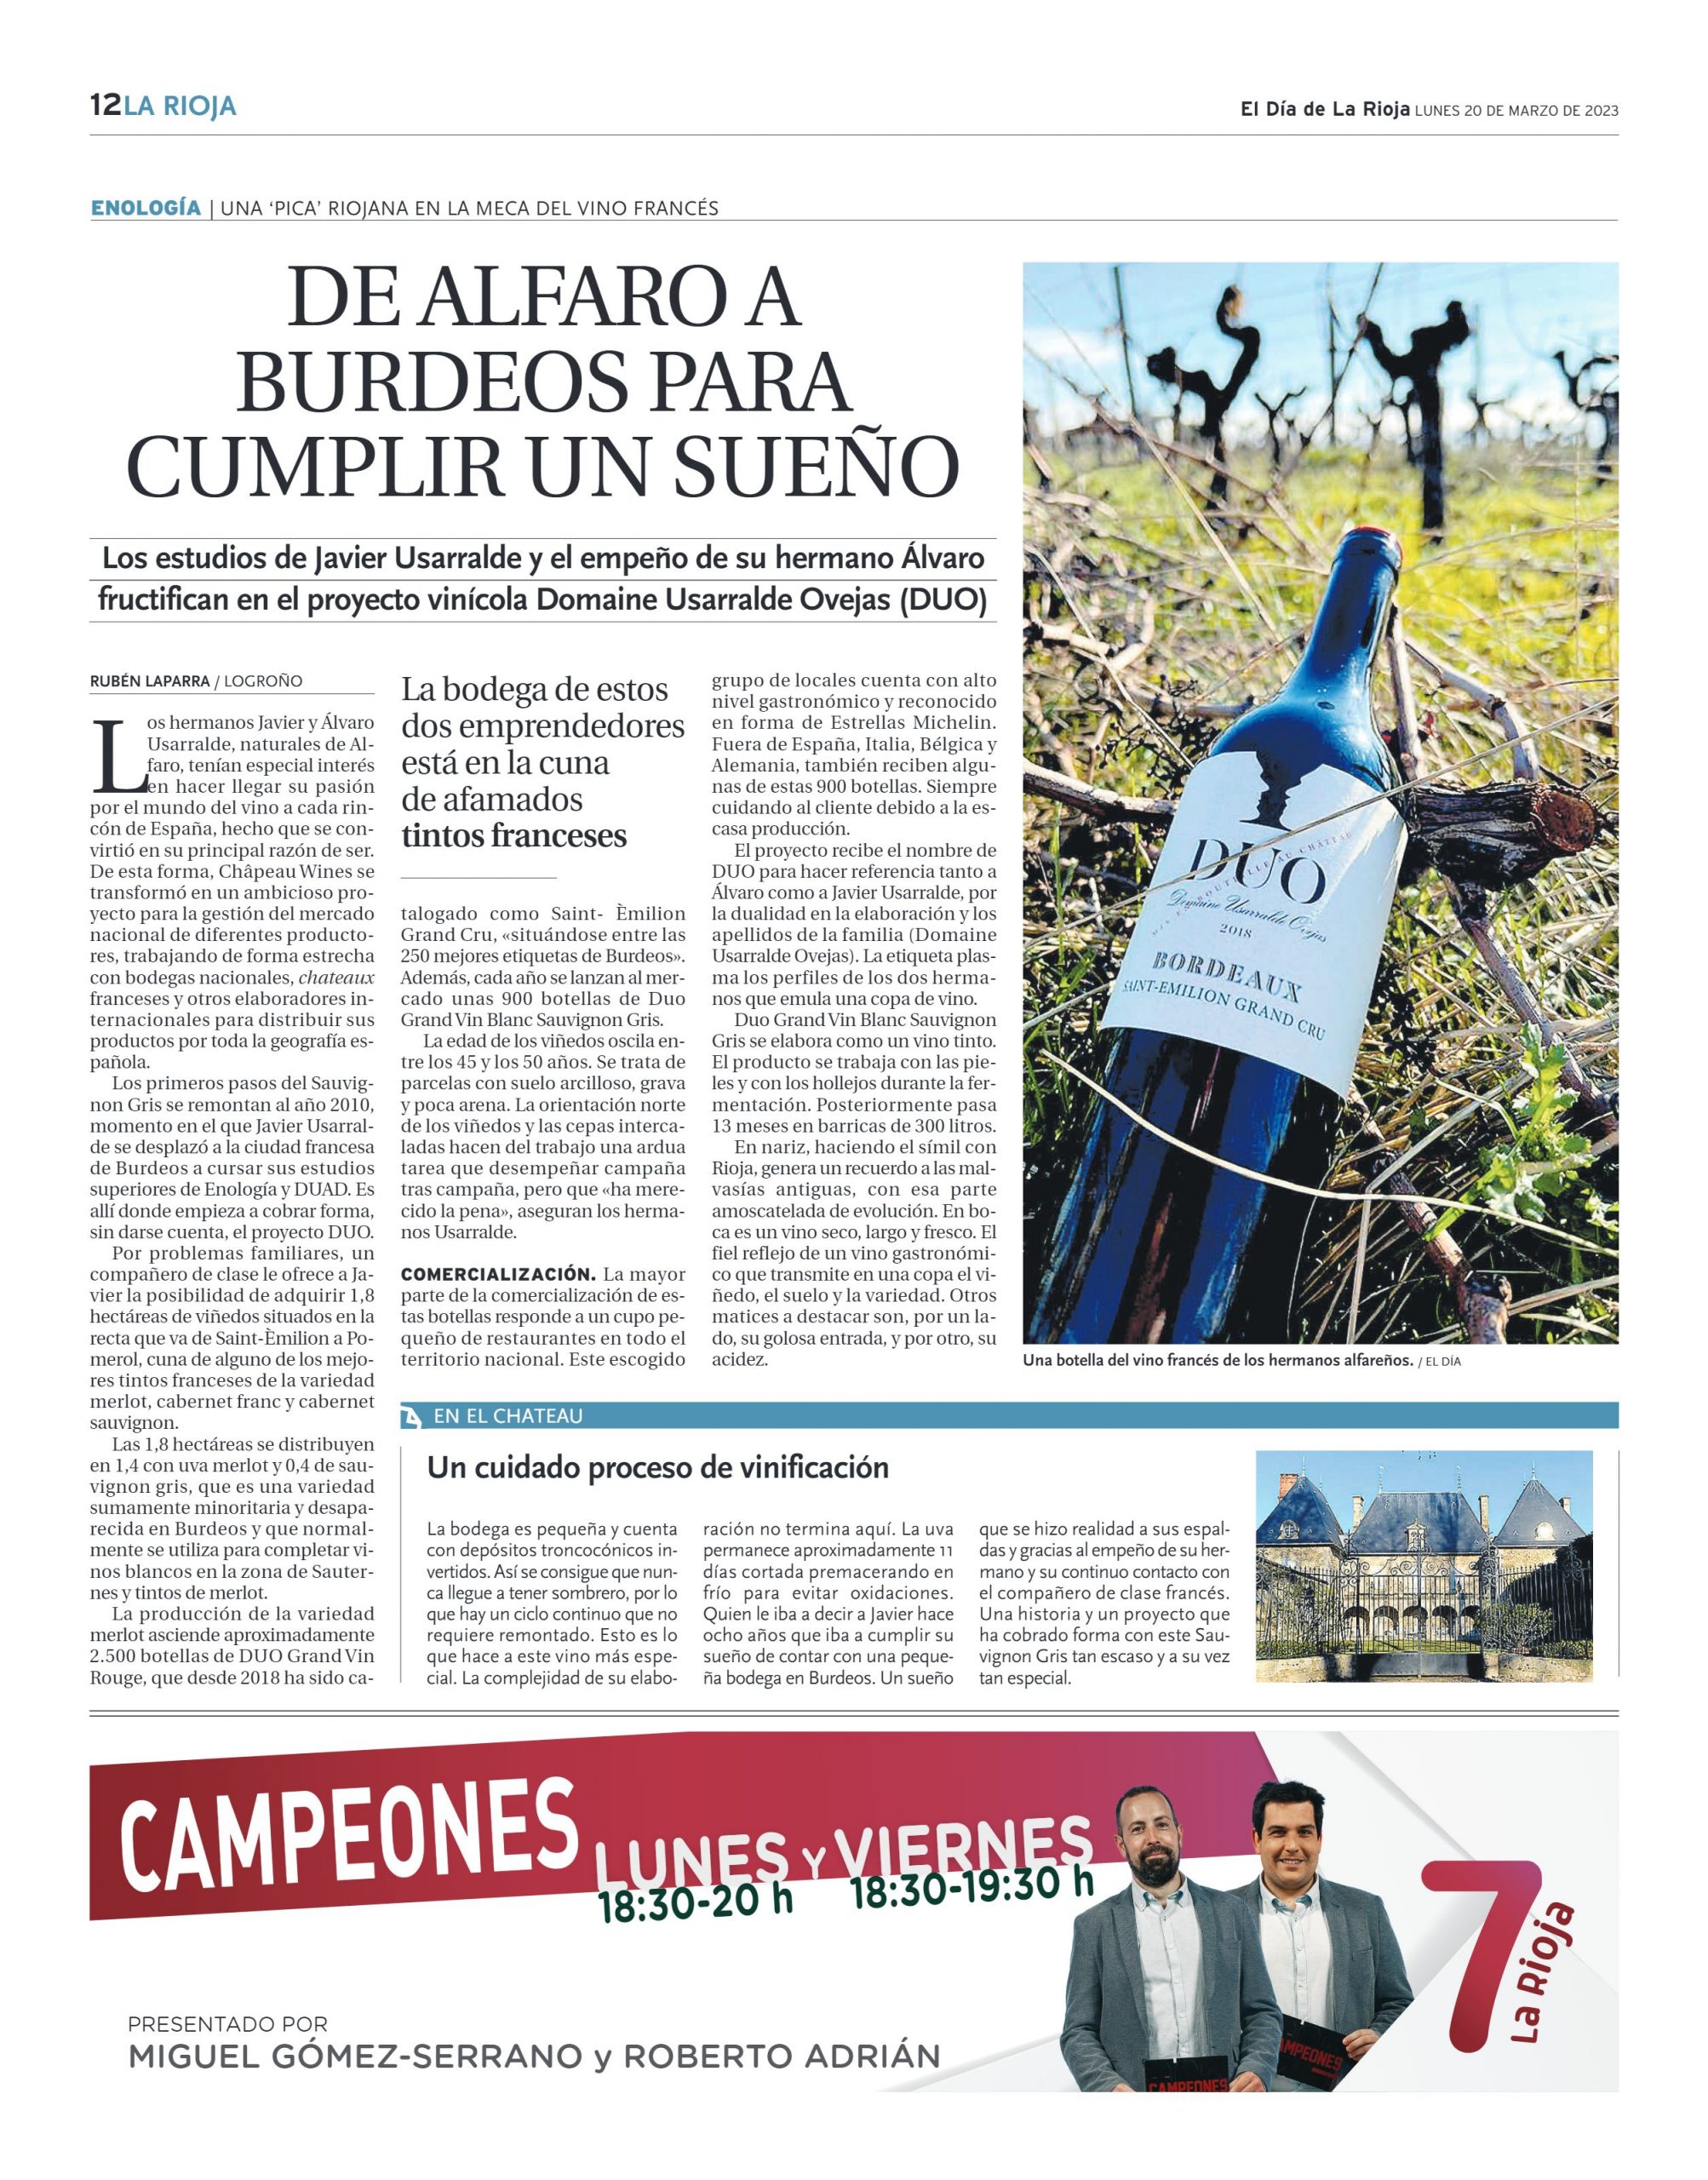 El Día de la Rioja se hace eco del proyecto Domaine Usarralde Ovejas (DUO). El artículo cuenta el origen de DUO, la nueva gama de vinos de los hermanos Usarralde. Una gama formada por dos vinos elaborados en Burdeos.